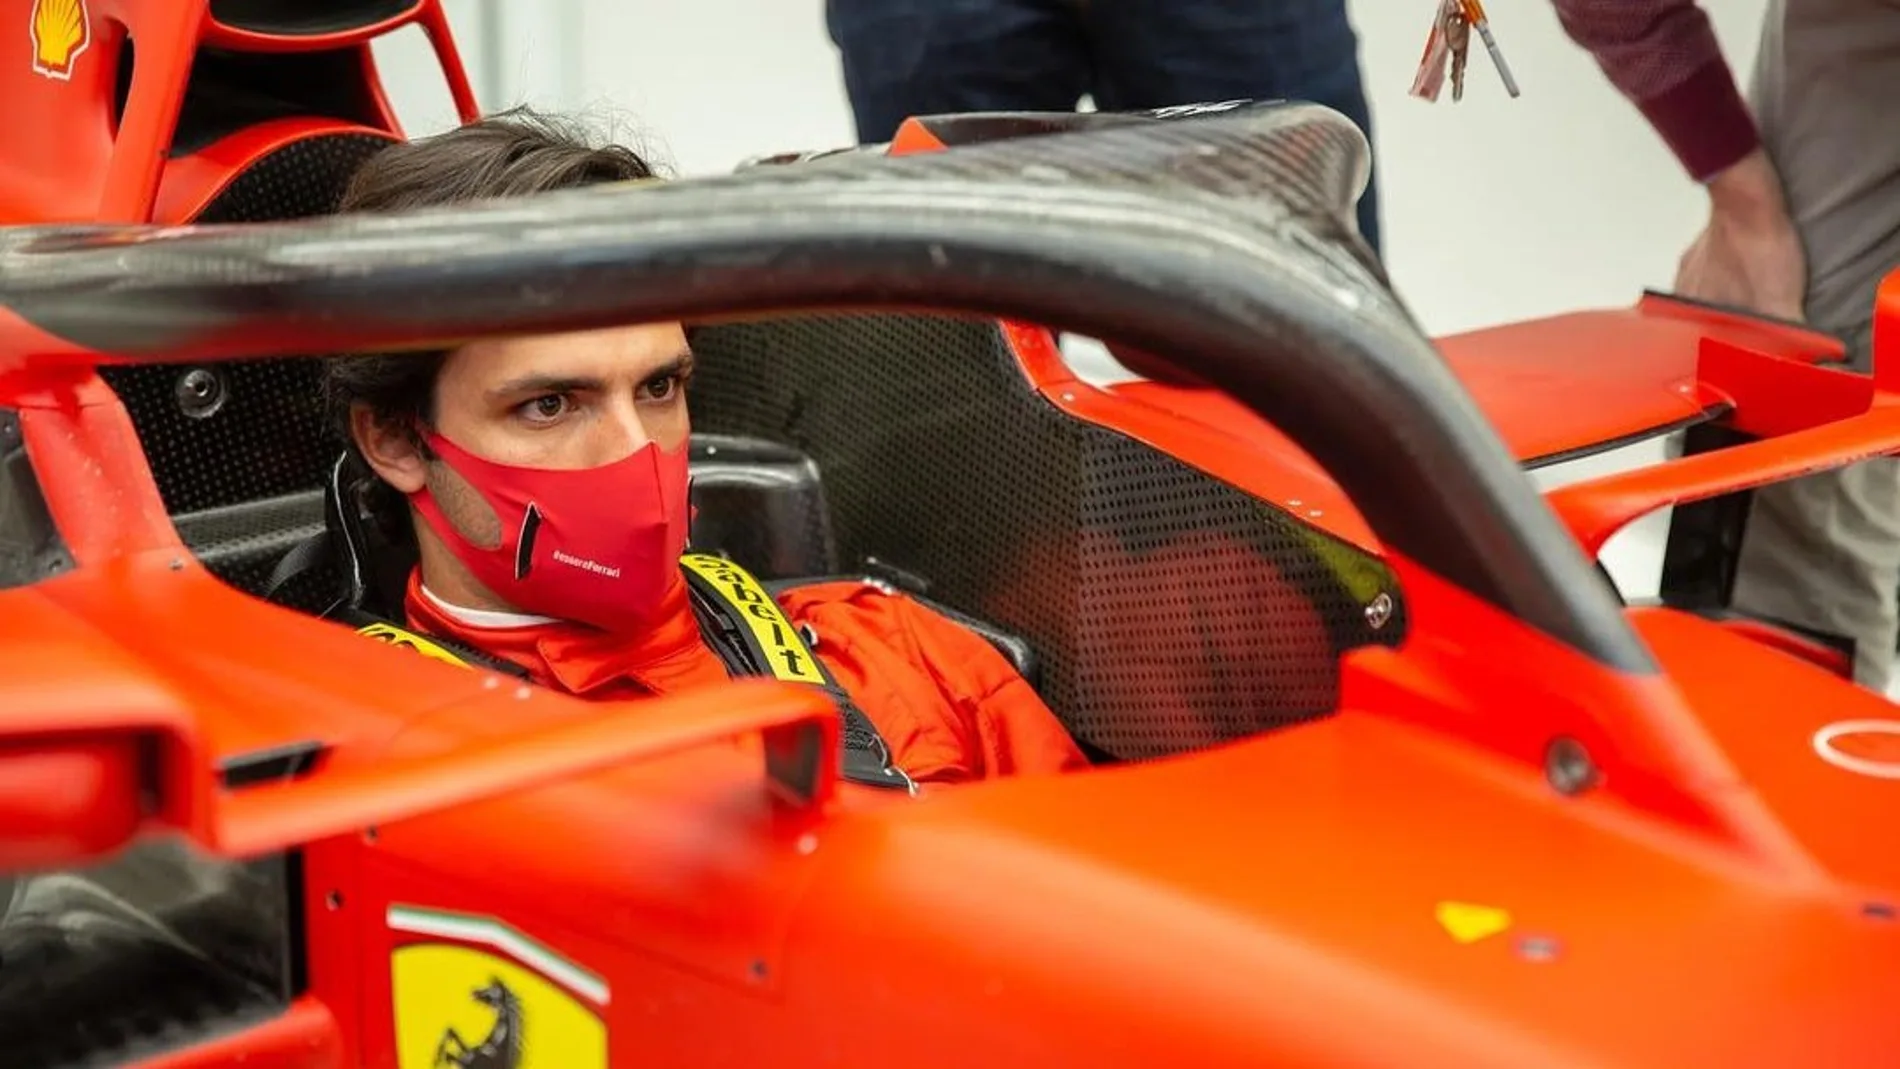 laSexta Deportes (19-12-20) Primer día de Carlos Sainz en Ferrari: se viste de rojo... ¡y se sube al coche!